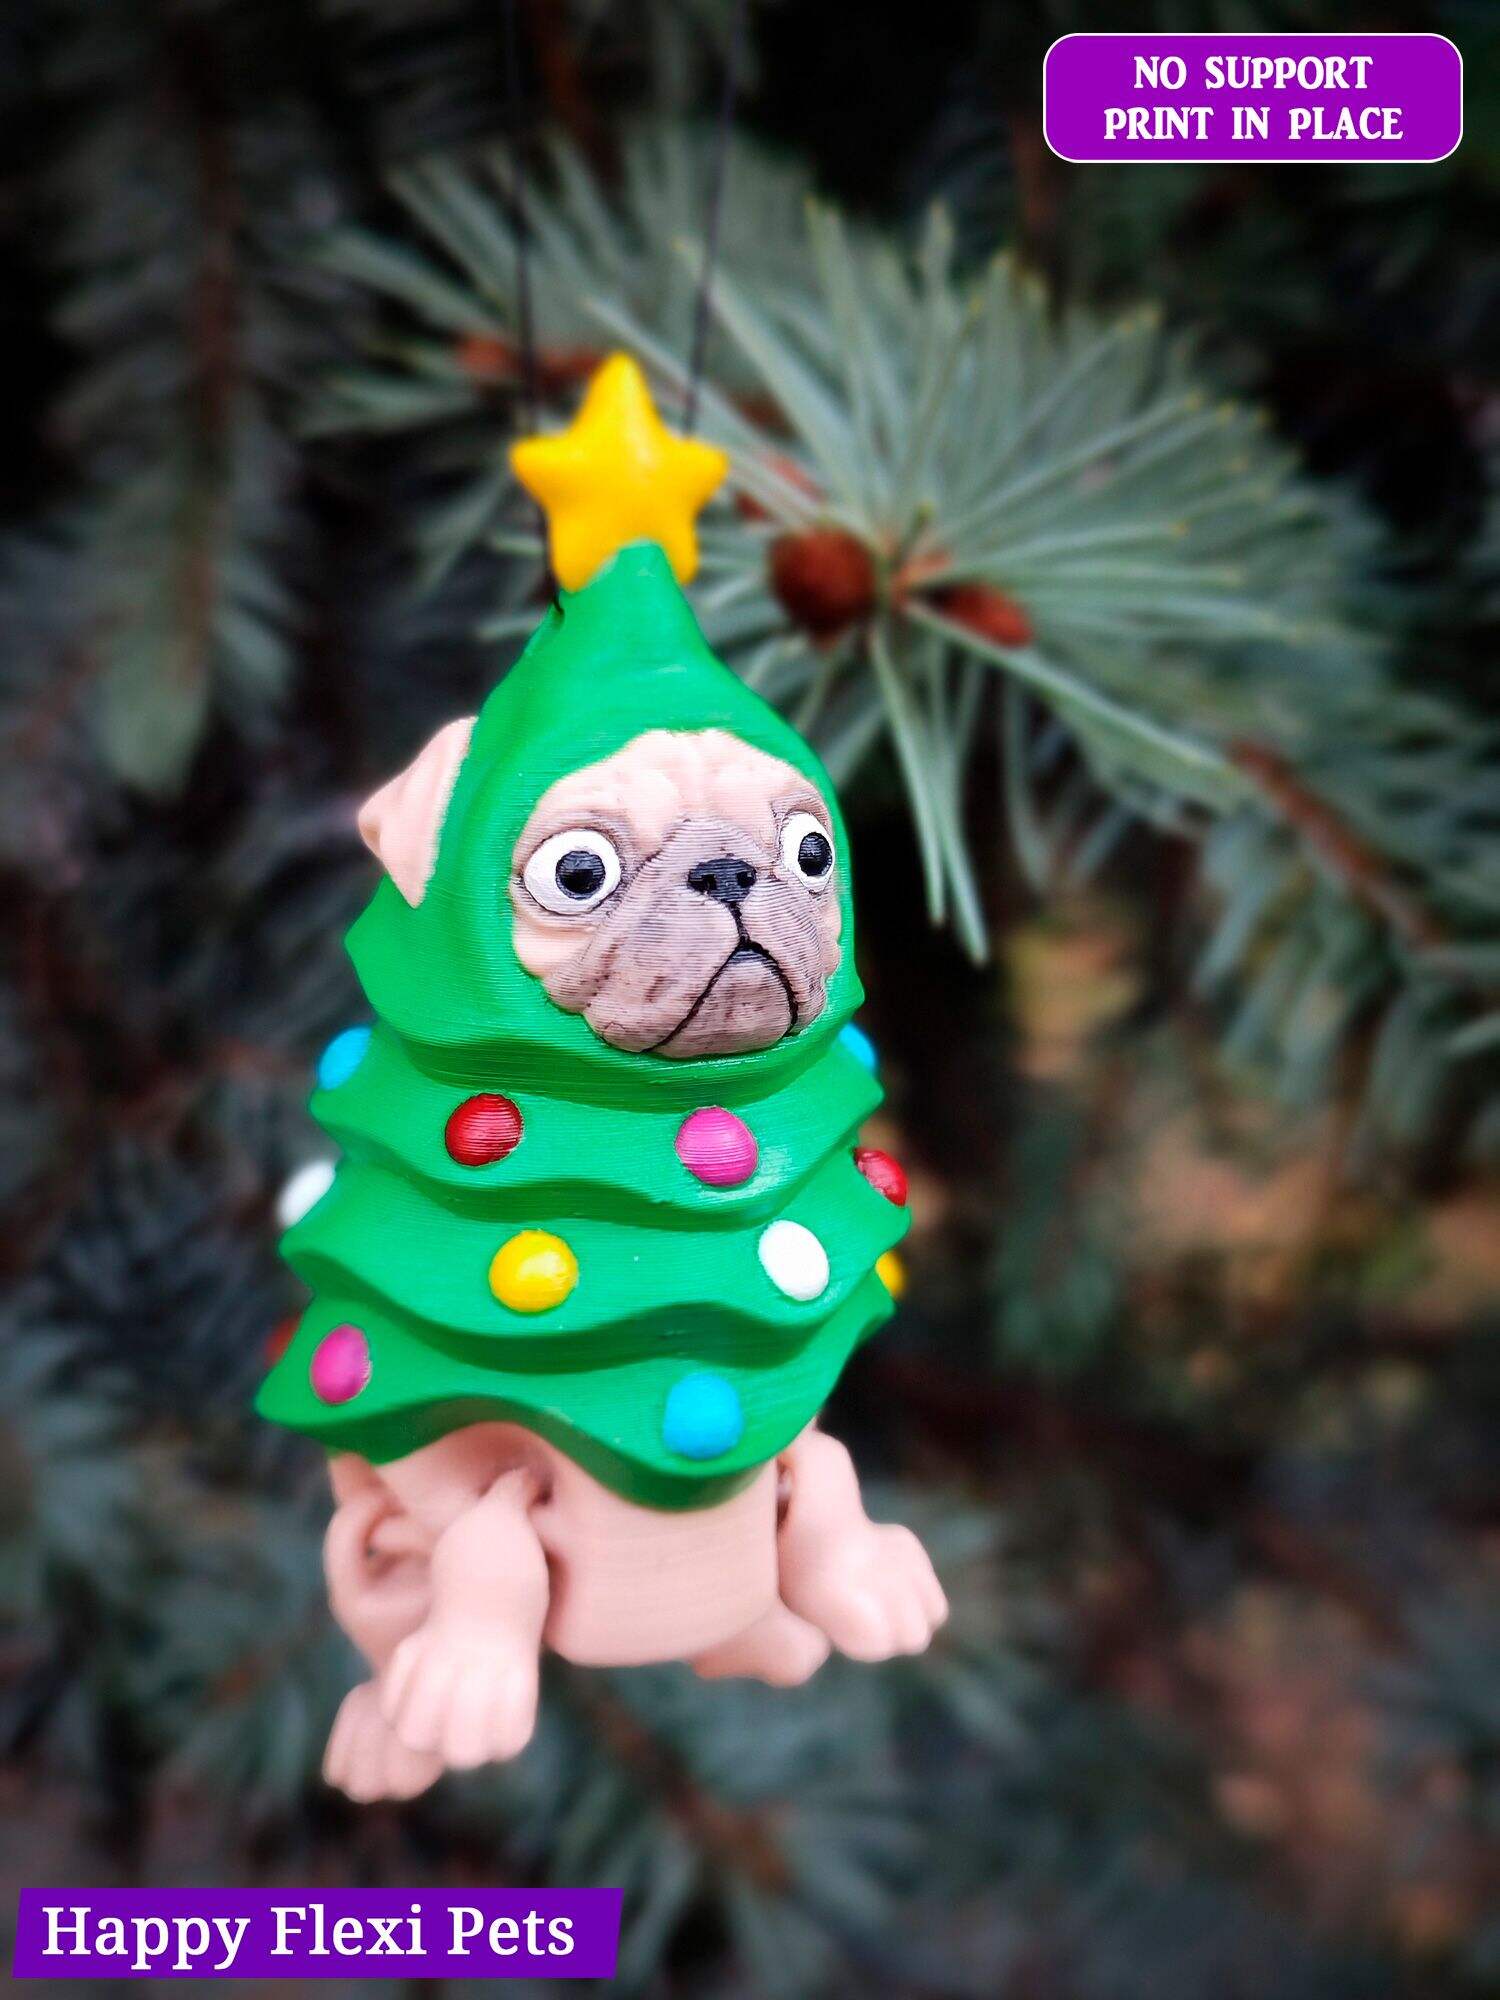 Pug the Christmas Tree - Christmas Collection